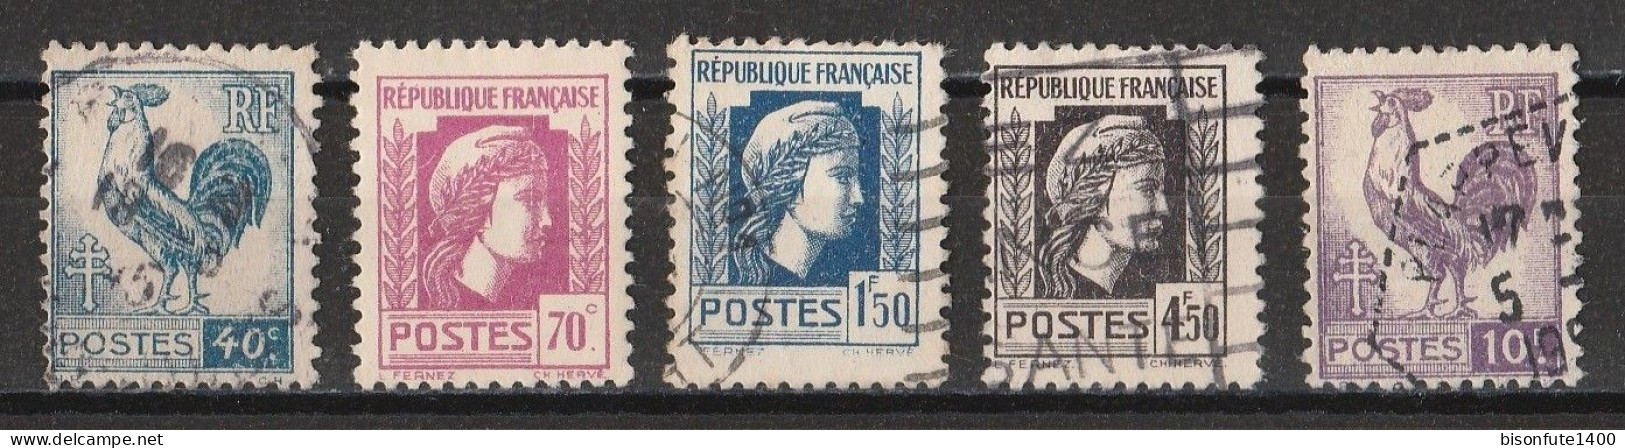 France 1944 : Timbres Yvert & Tellier N° 632 - 635 - 639 - 644 Et 646 Avec Oblitérations Rondes. - Gebruikt